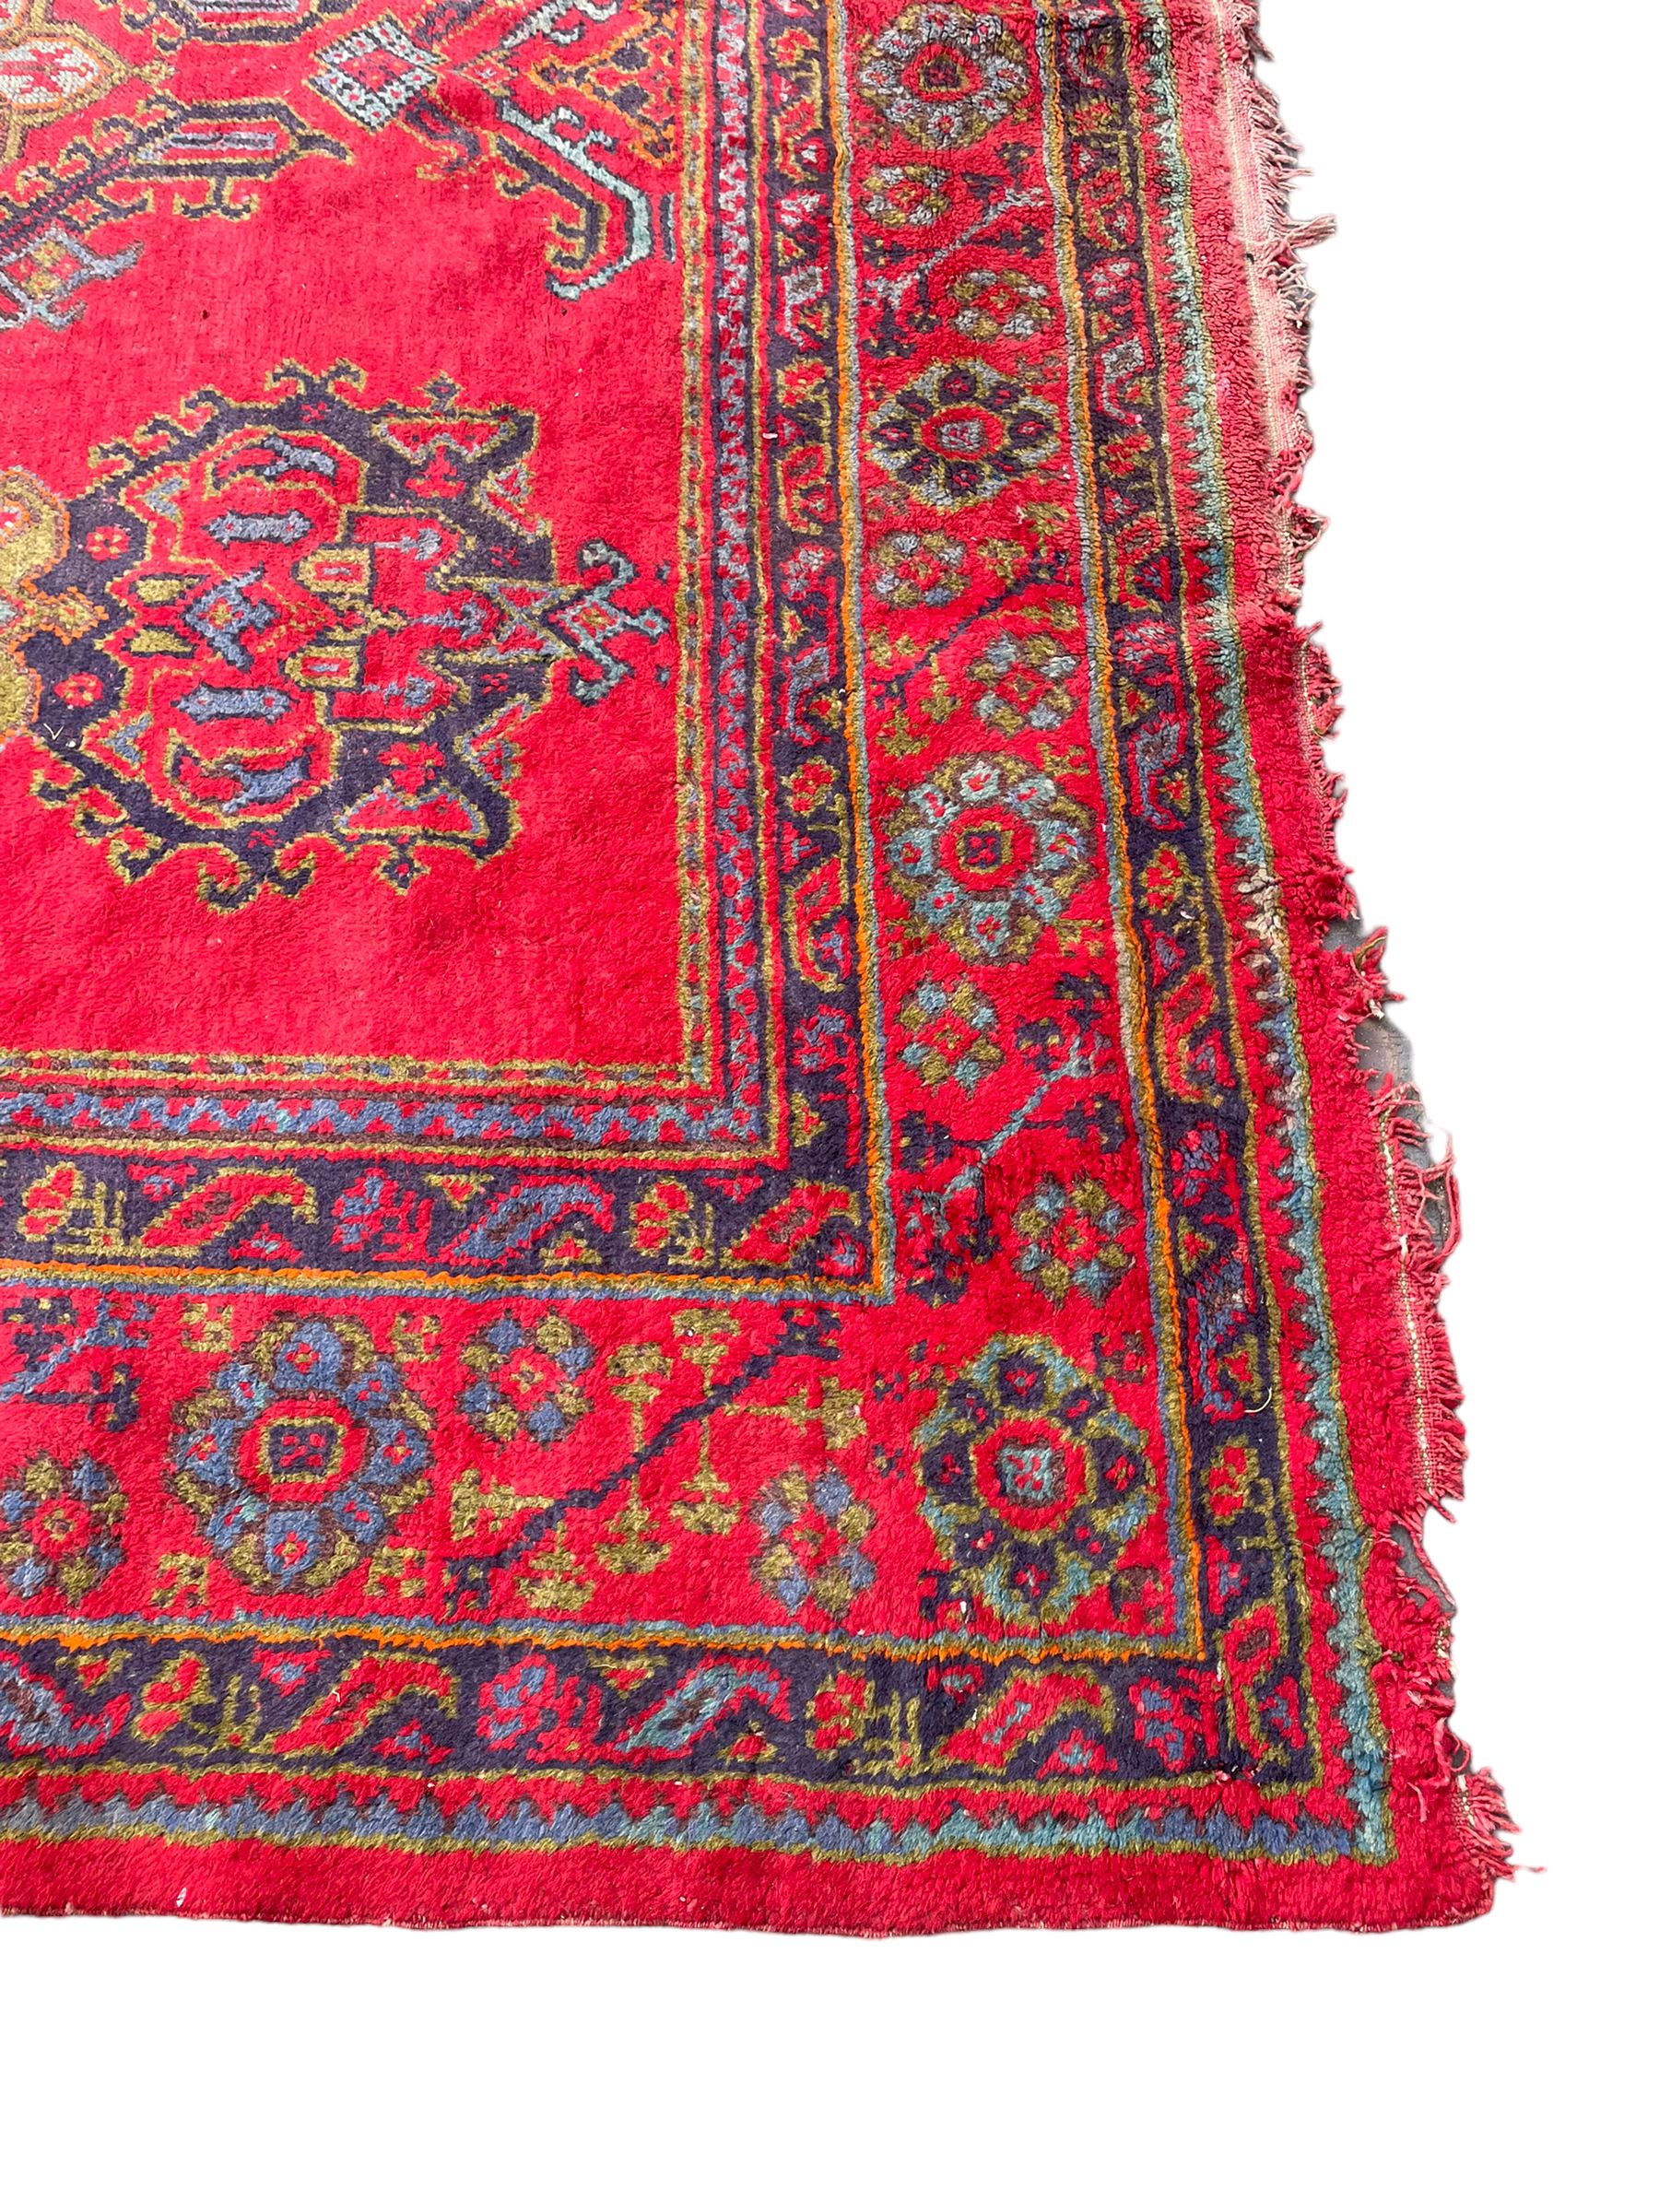 Early 20th century Western Anatolia Turkish Oushak crimson ground carpet - Image 4 of 10